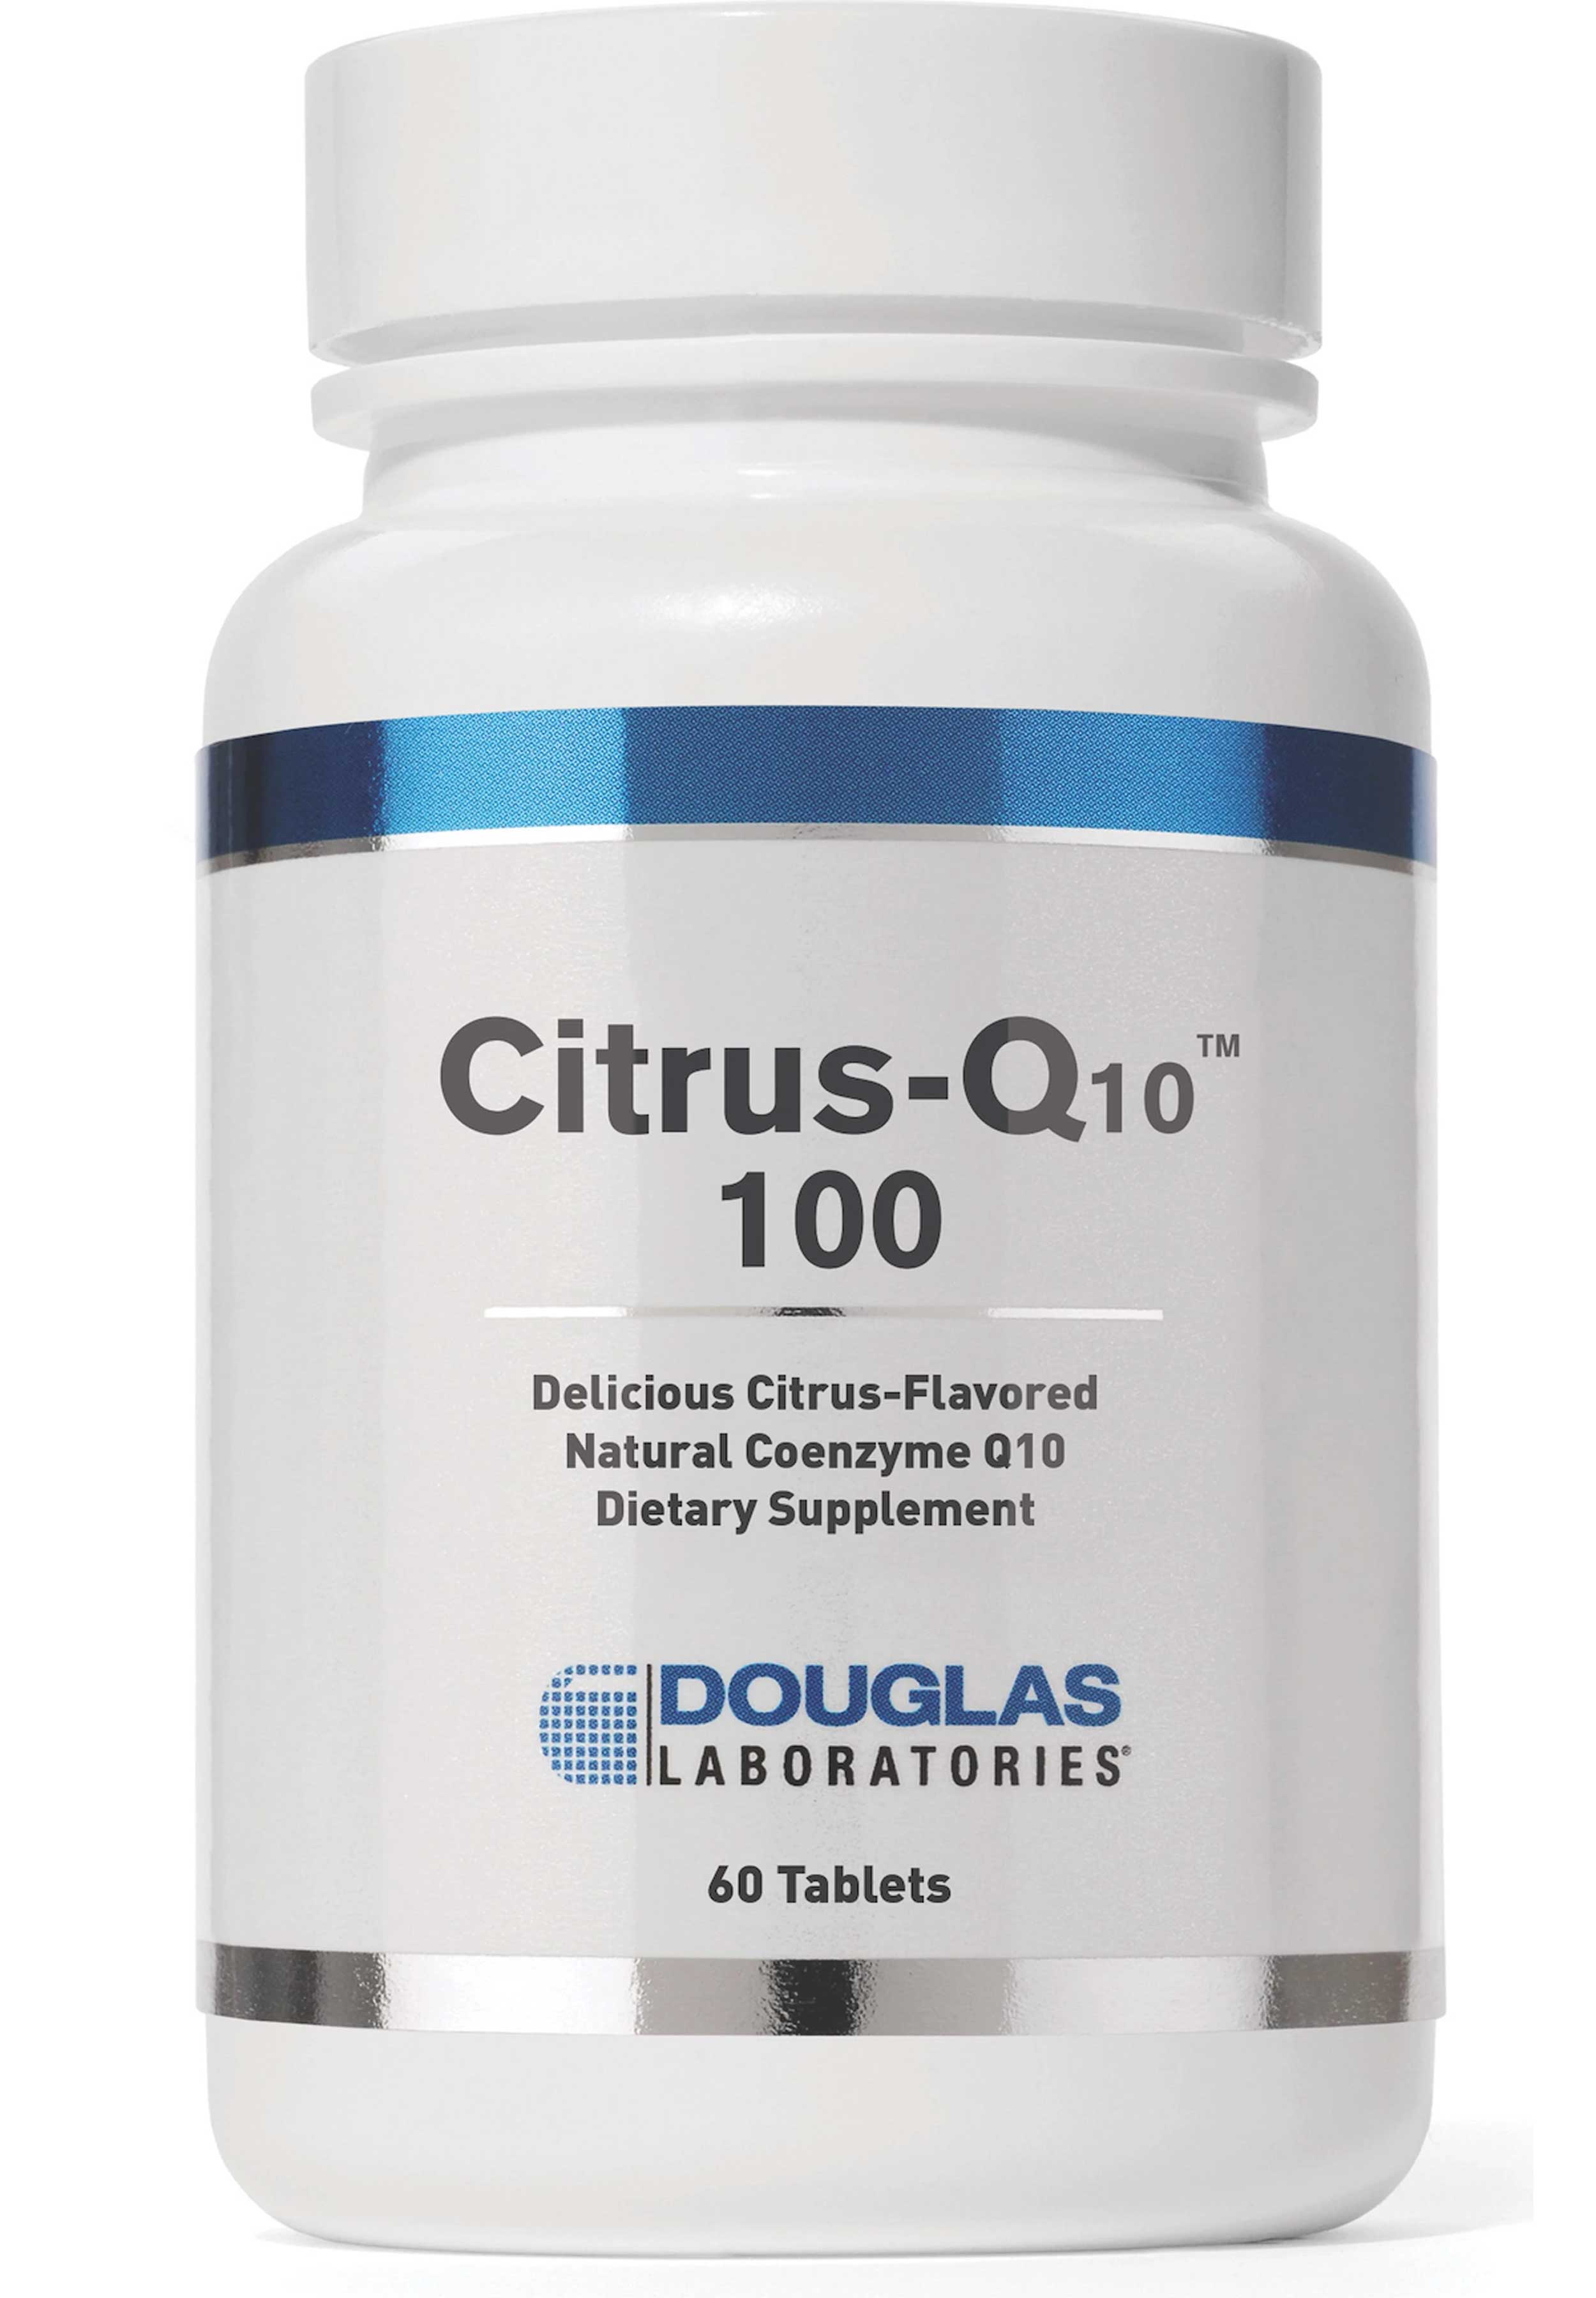 Douglas Laboratories Citrus-Q10 100